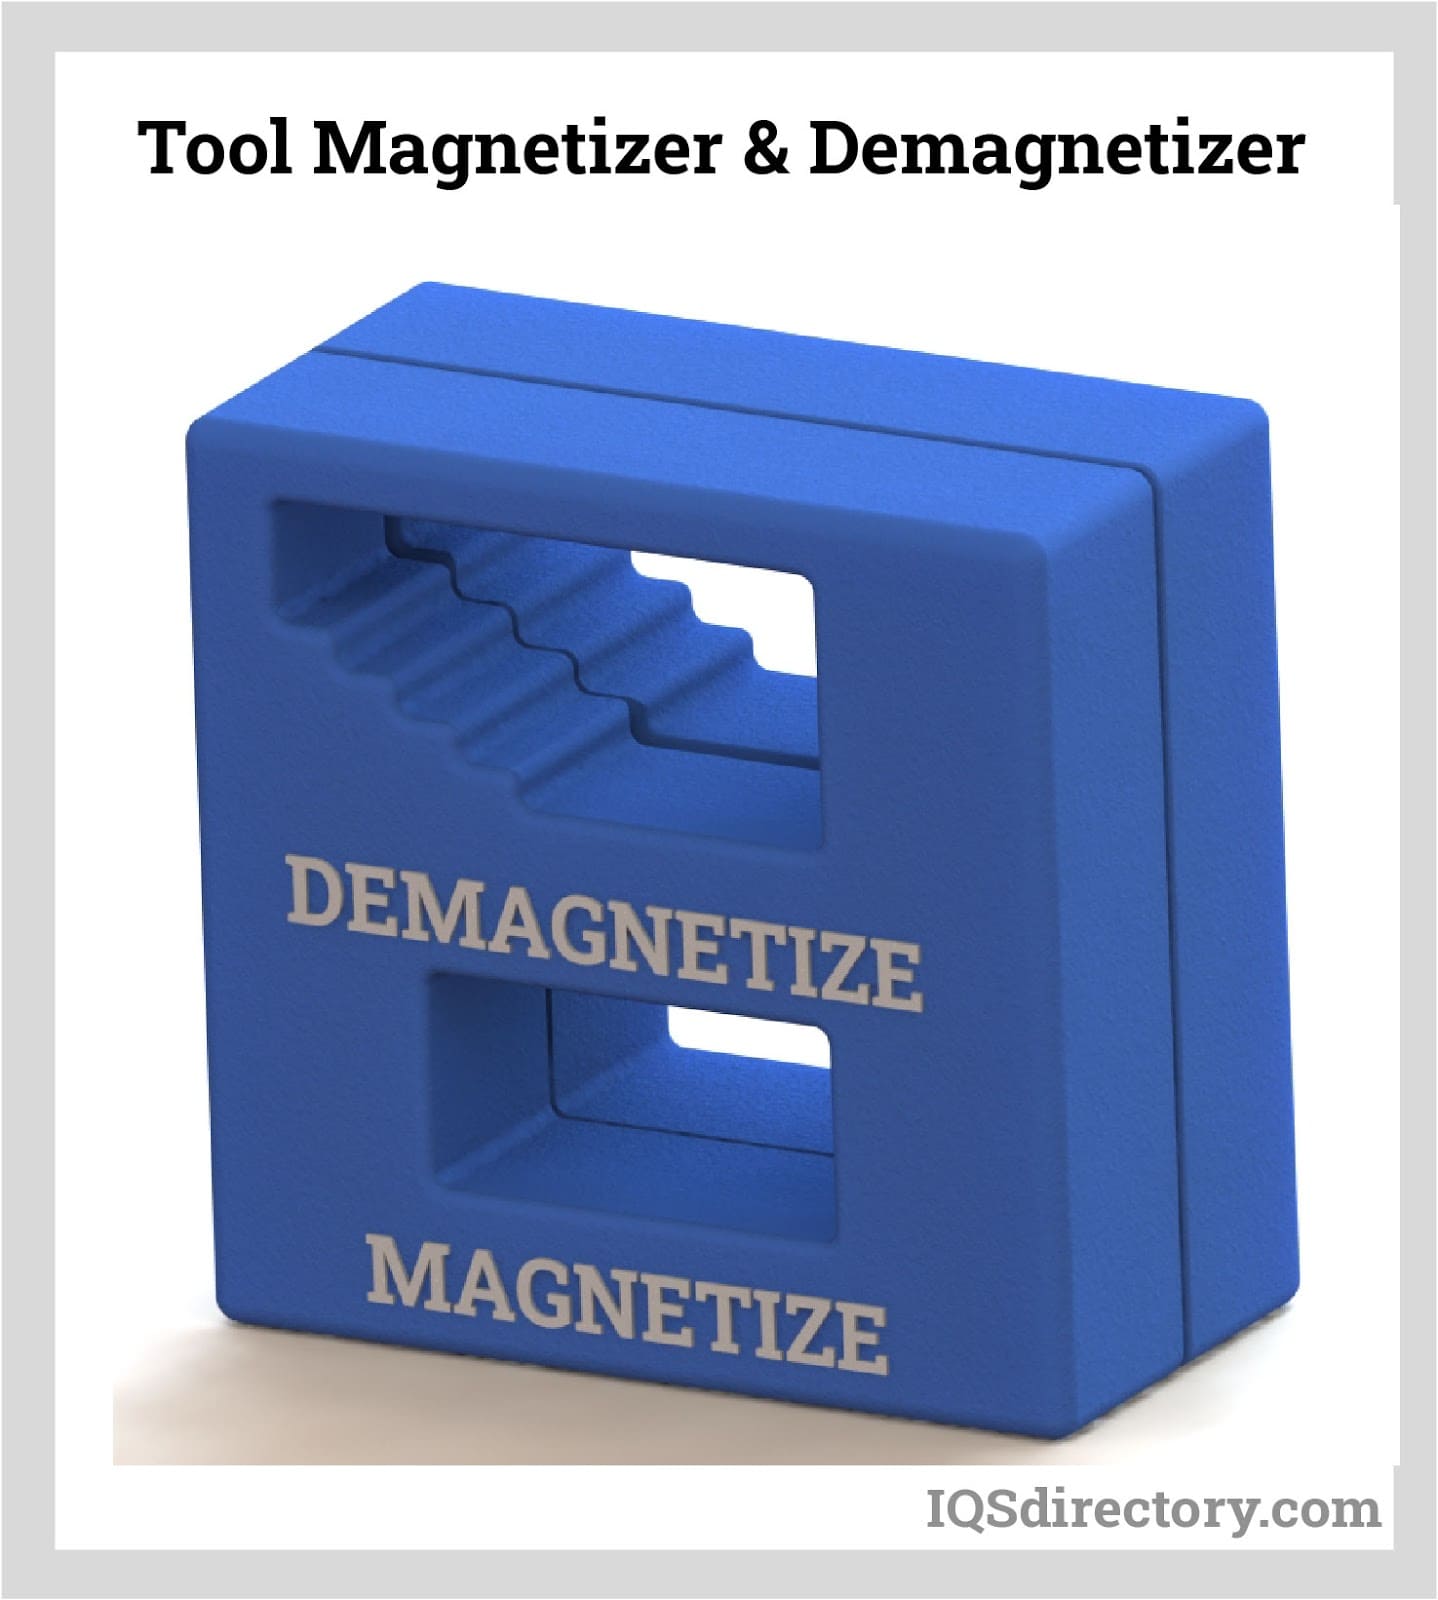 Tool Magnetizer & Demagnetizer